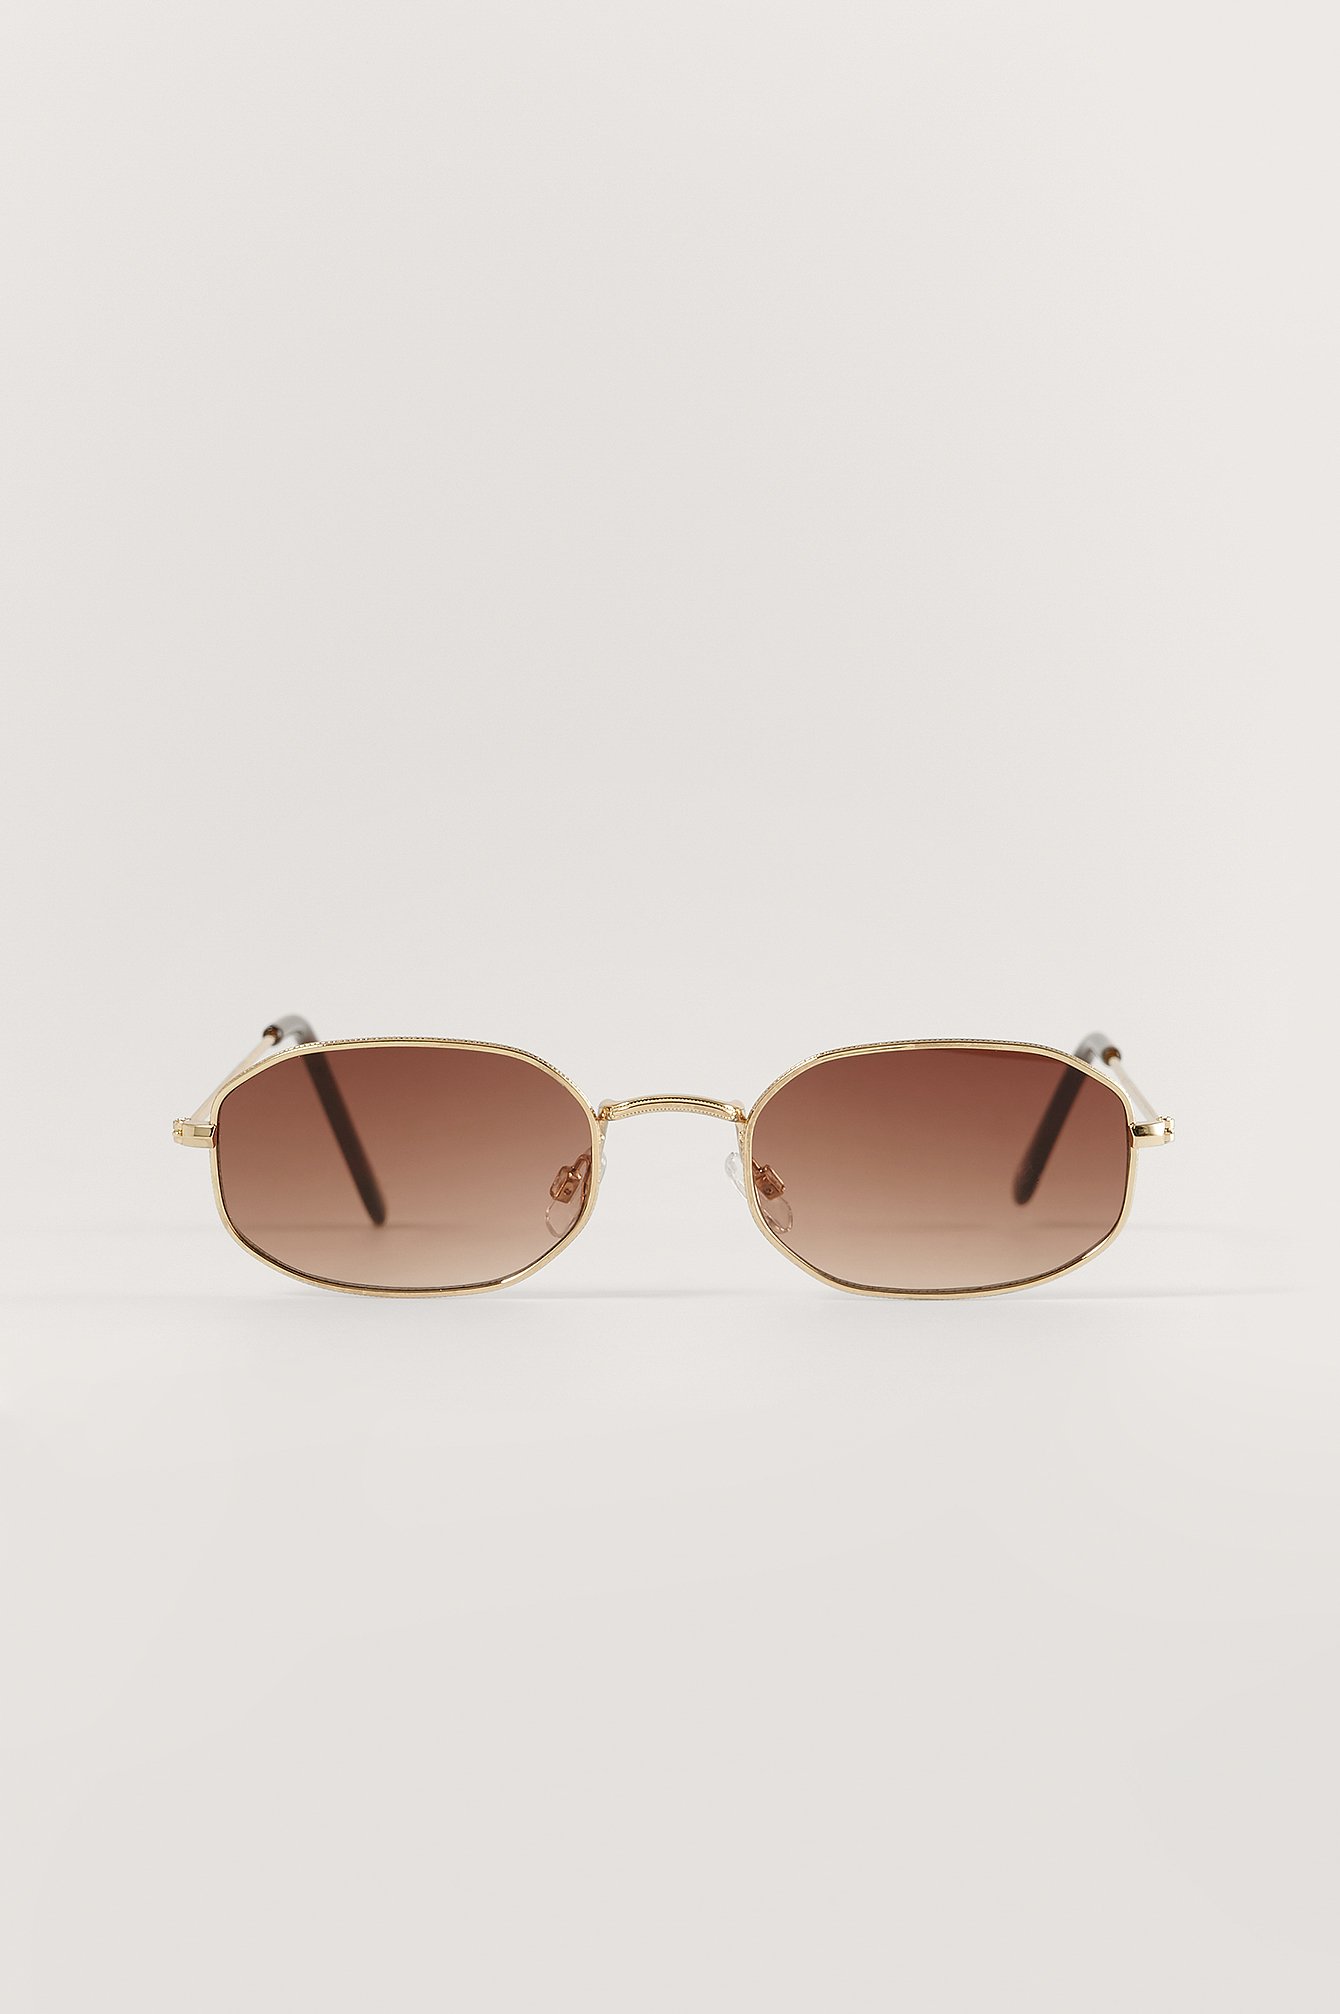 Gold/Brown Small Oval Retro Sunglasses